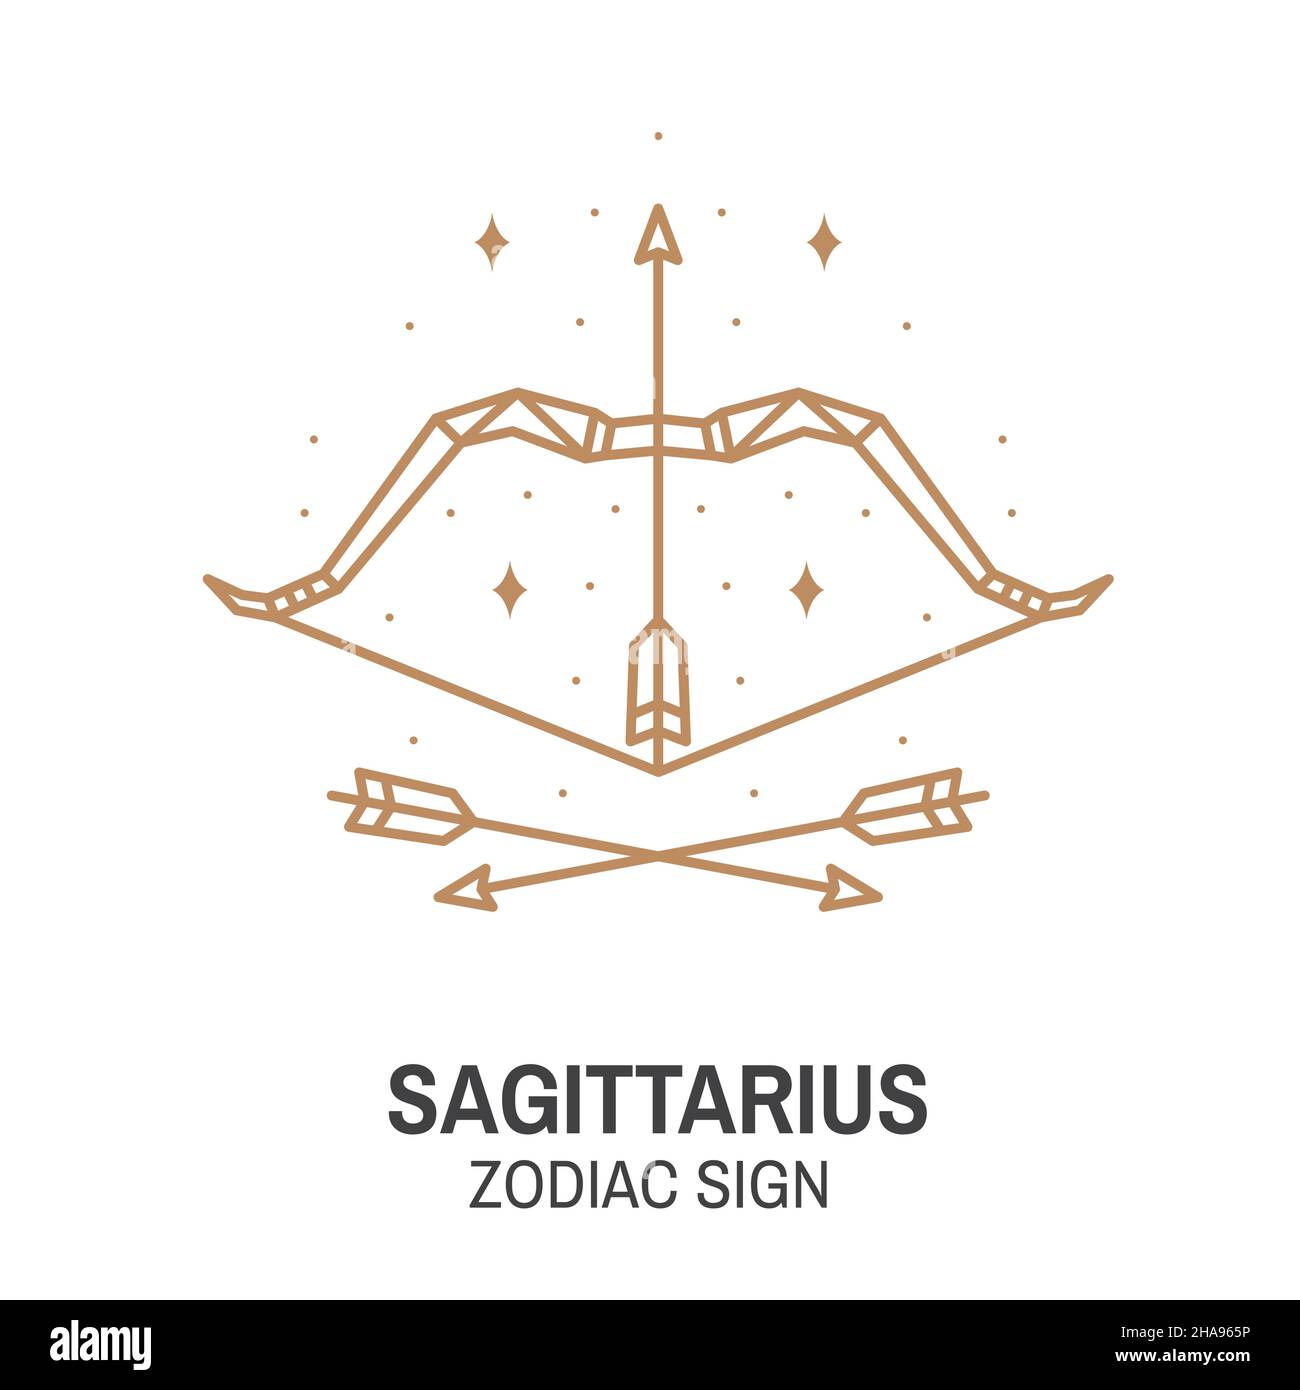 Sagittarius Zodiac Astrology Art Print Fire Star Sign 